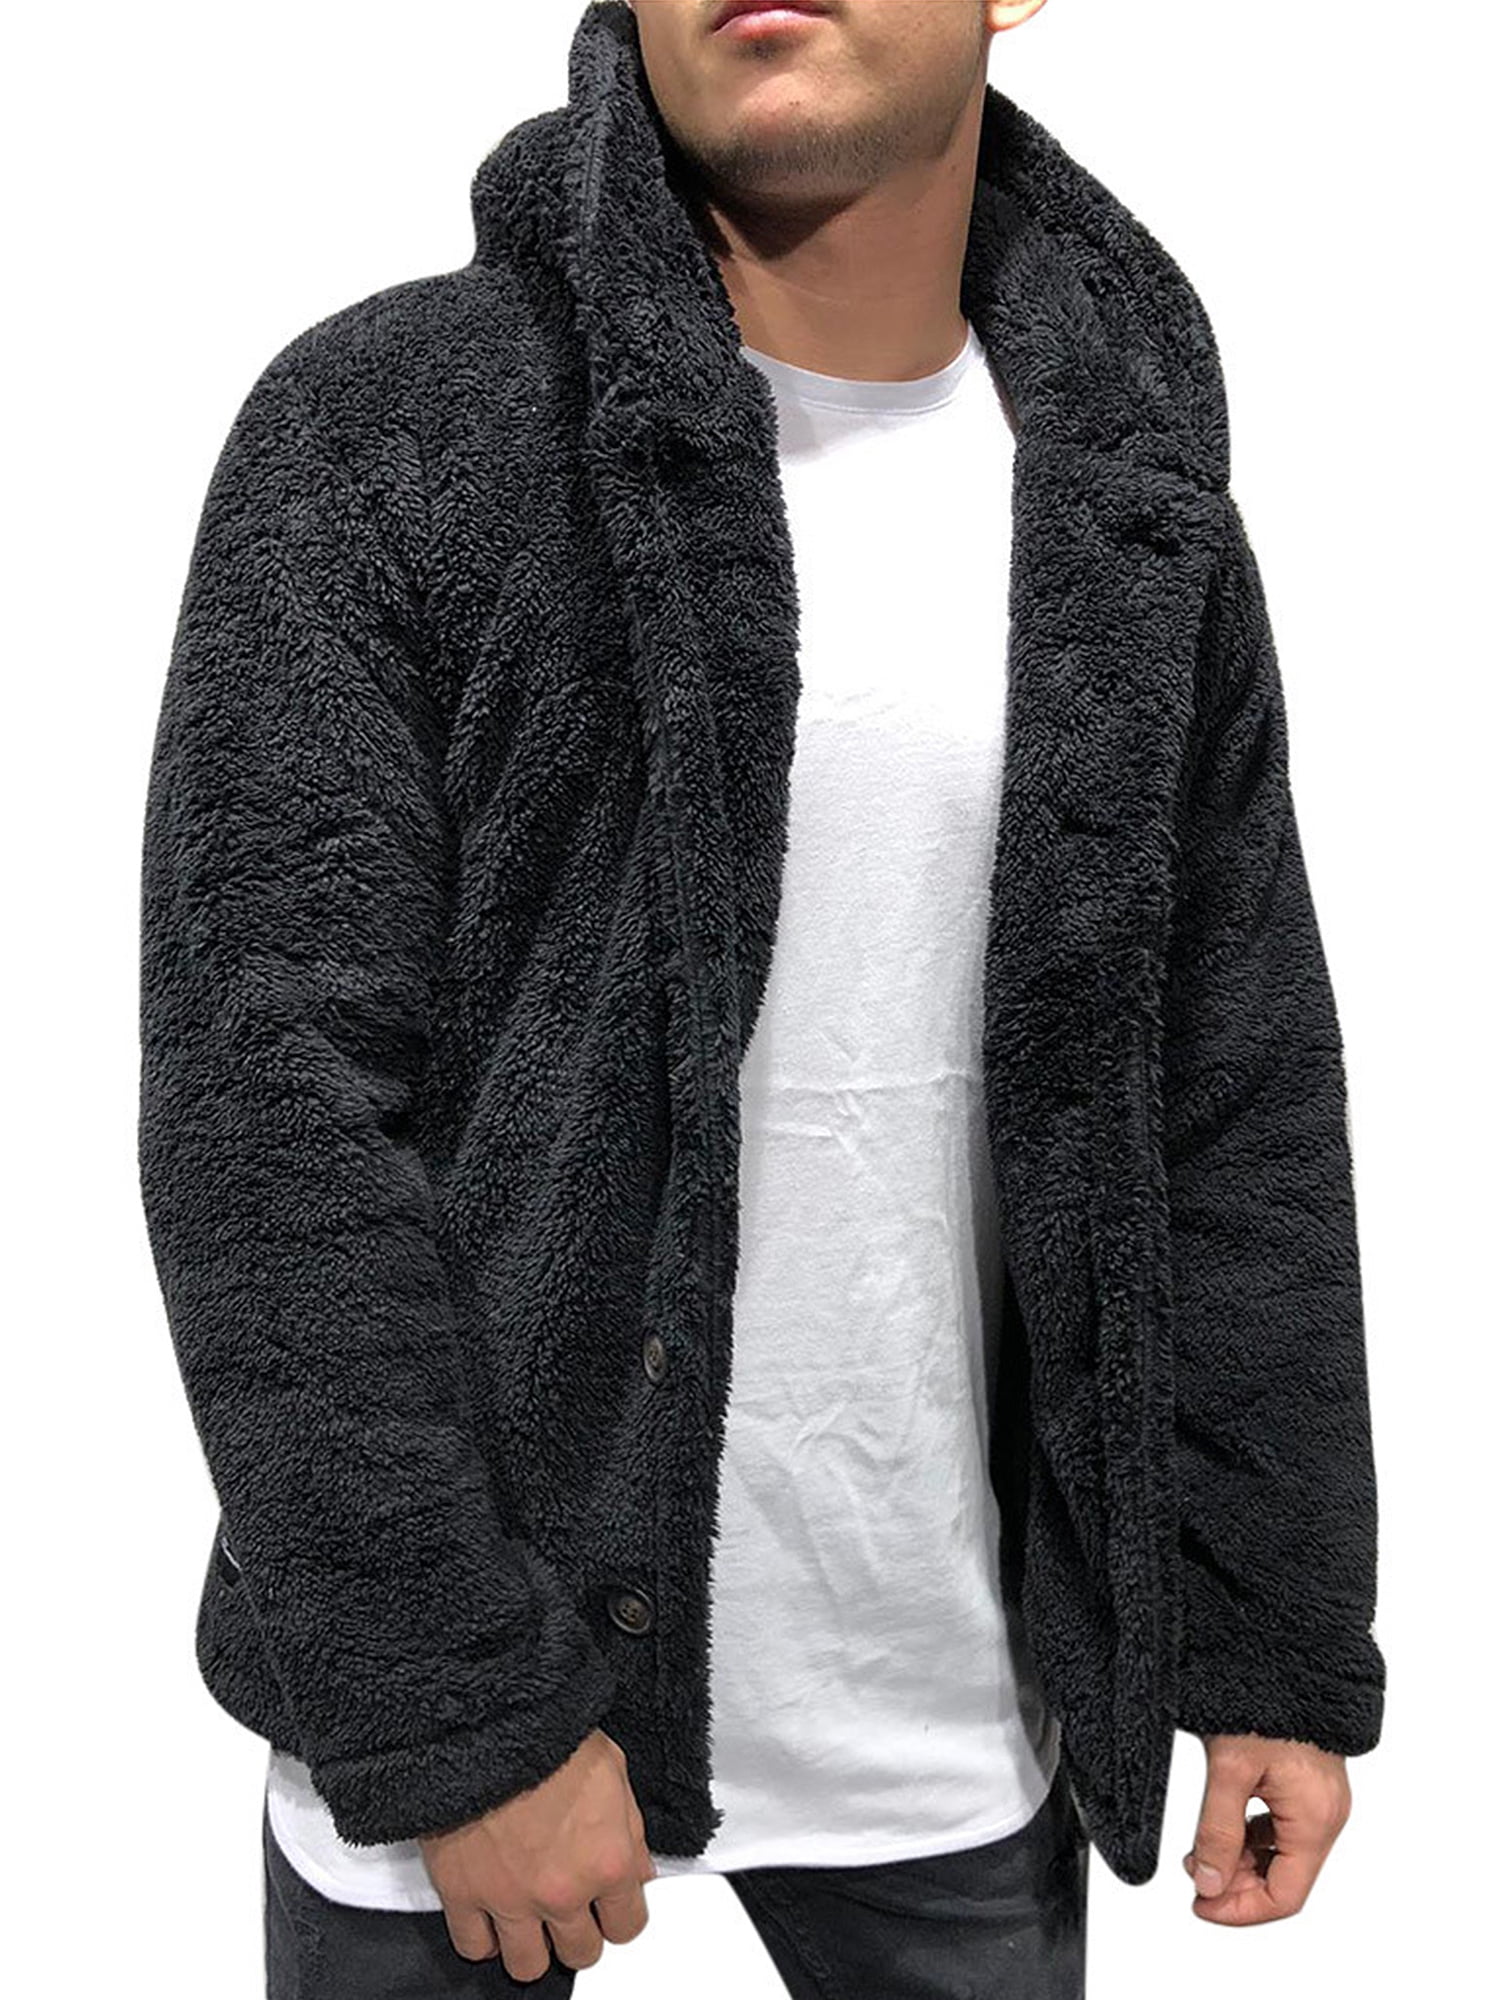 Men Winter Casual Hoodie Warm Fleece Sweatshirt Hooded Coat Sweater Pullover Top 